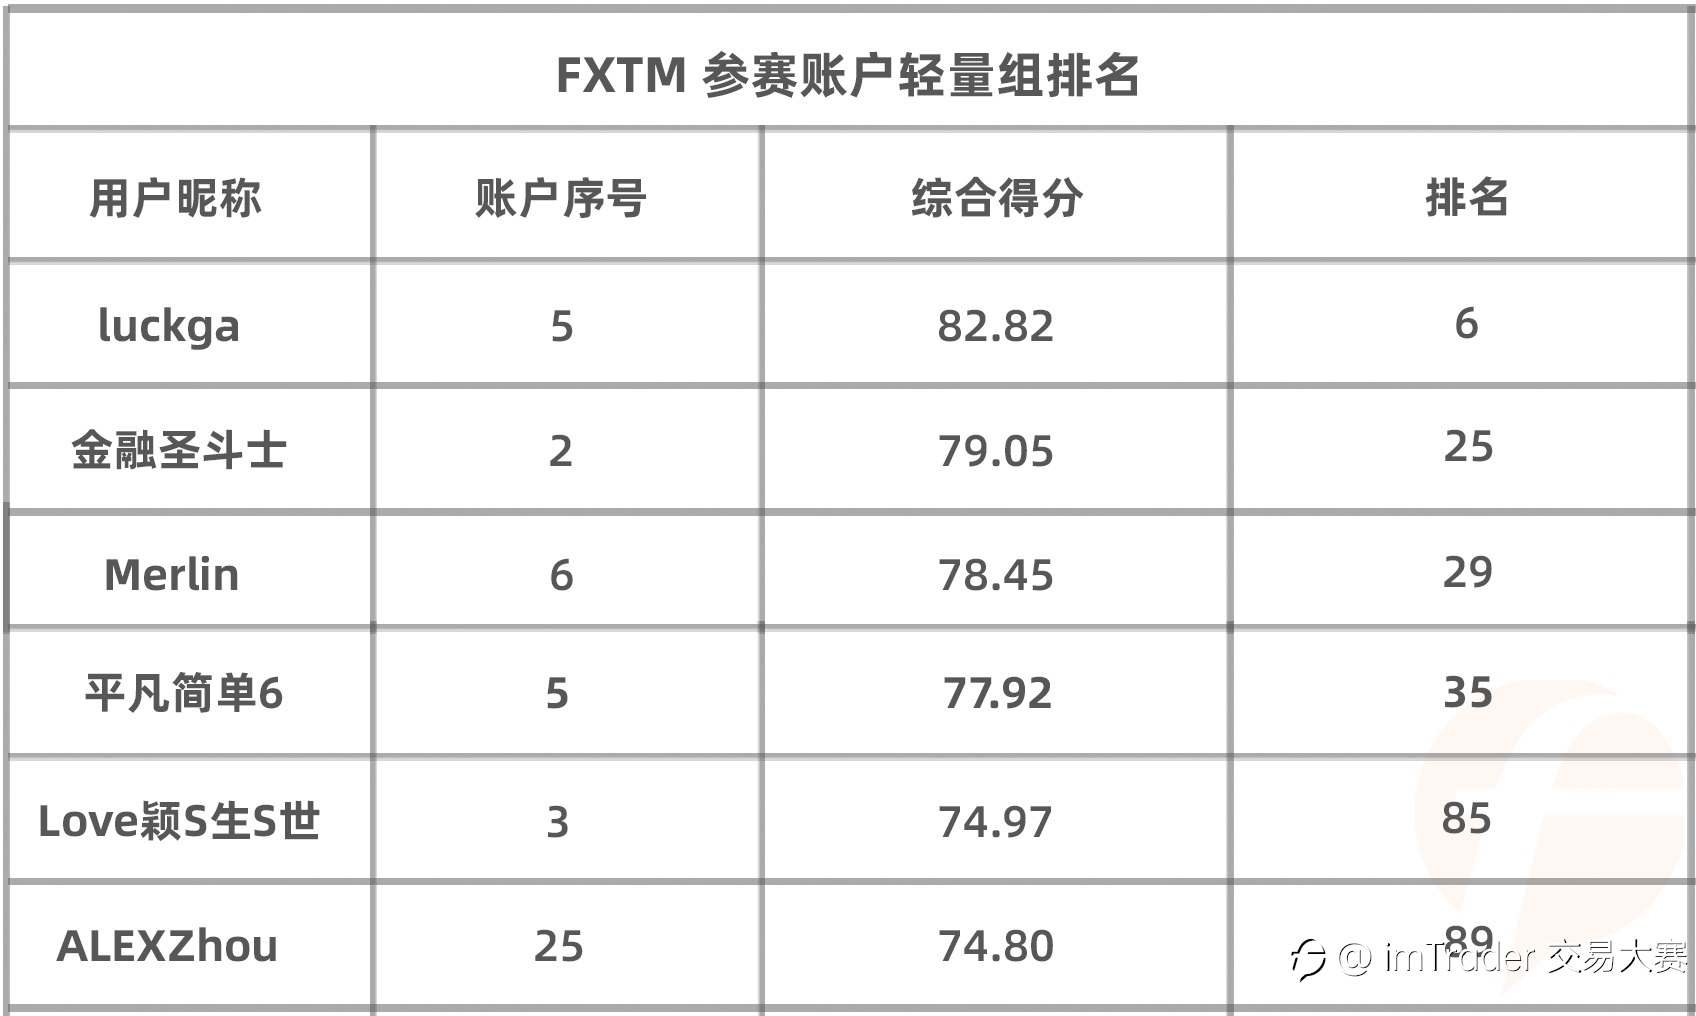 知名交易商 FXTM 富拓的参赛账户数达114个！大赛总参赛账户数破 3,200 大关！